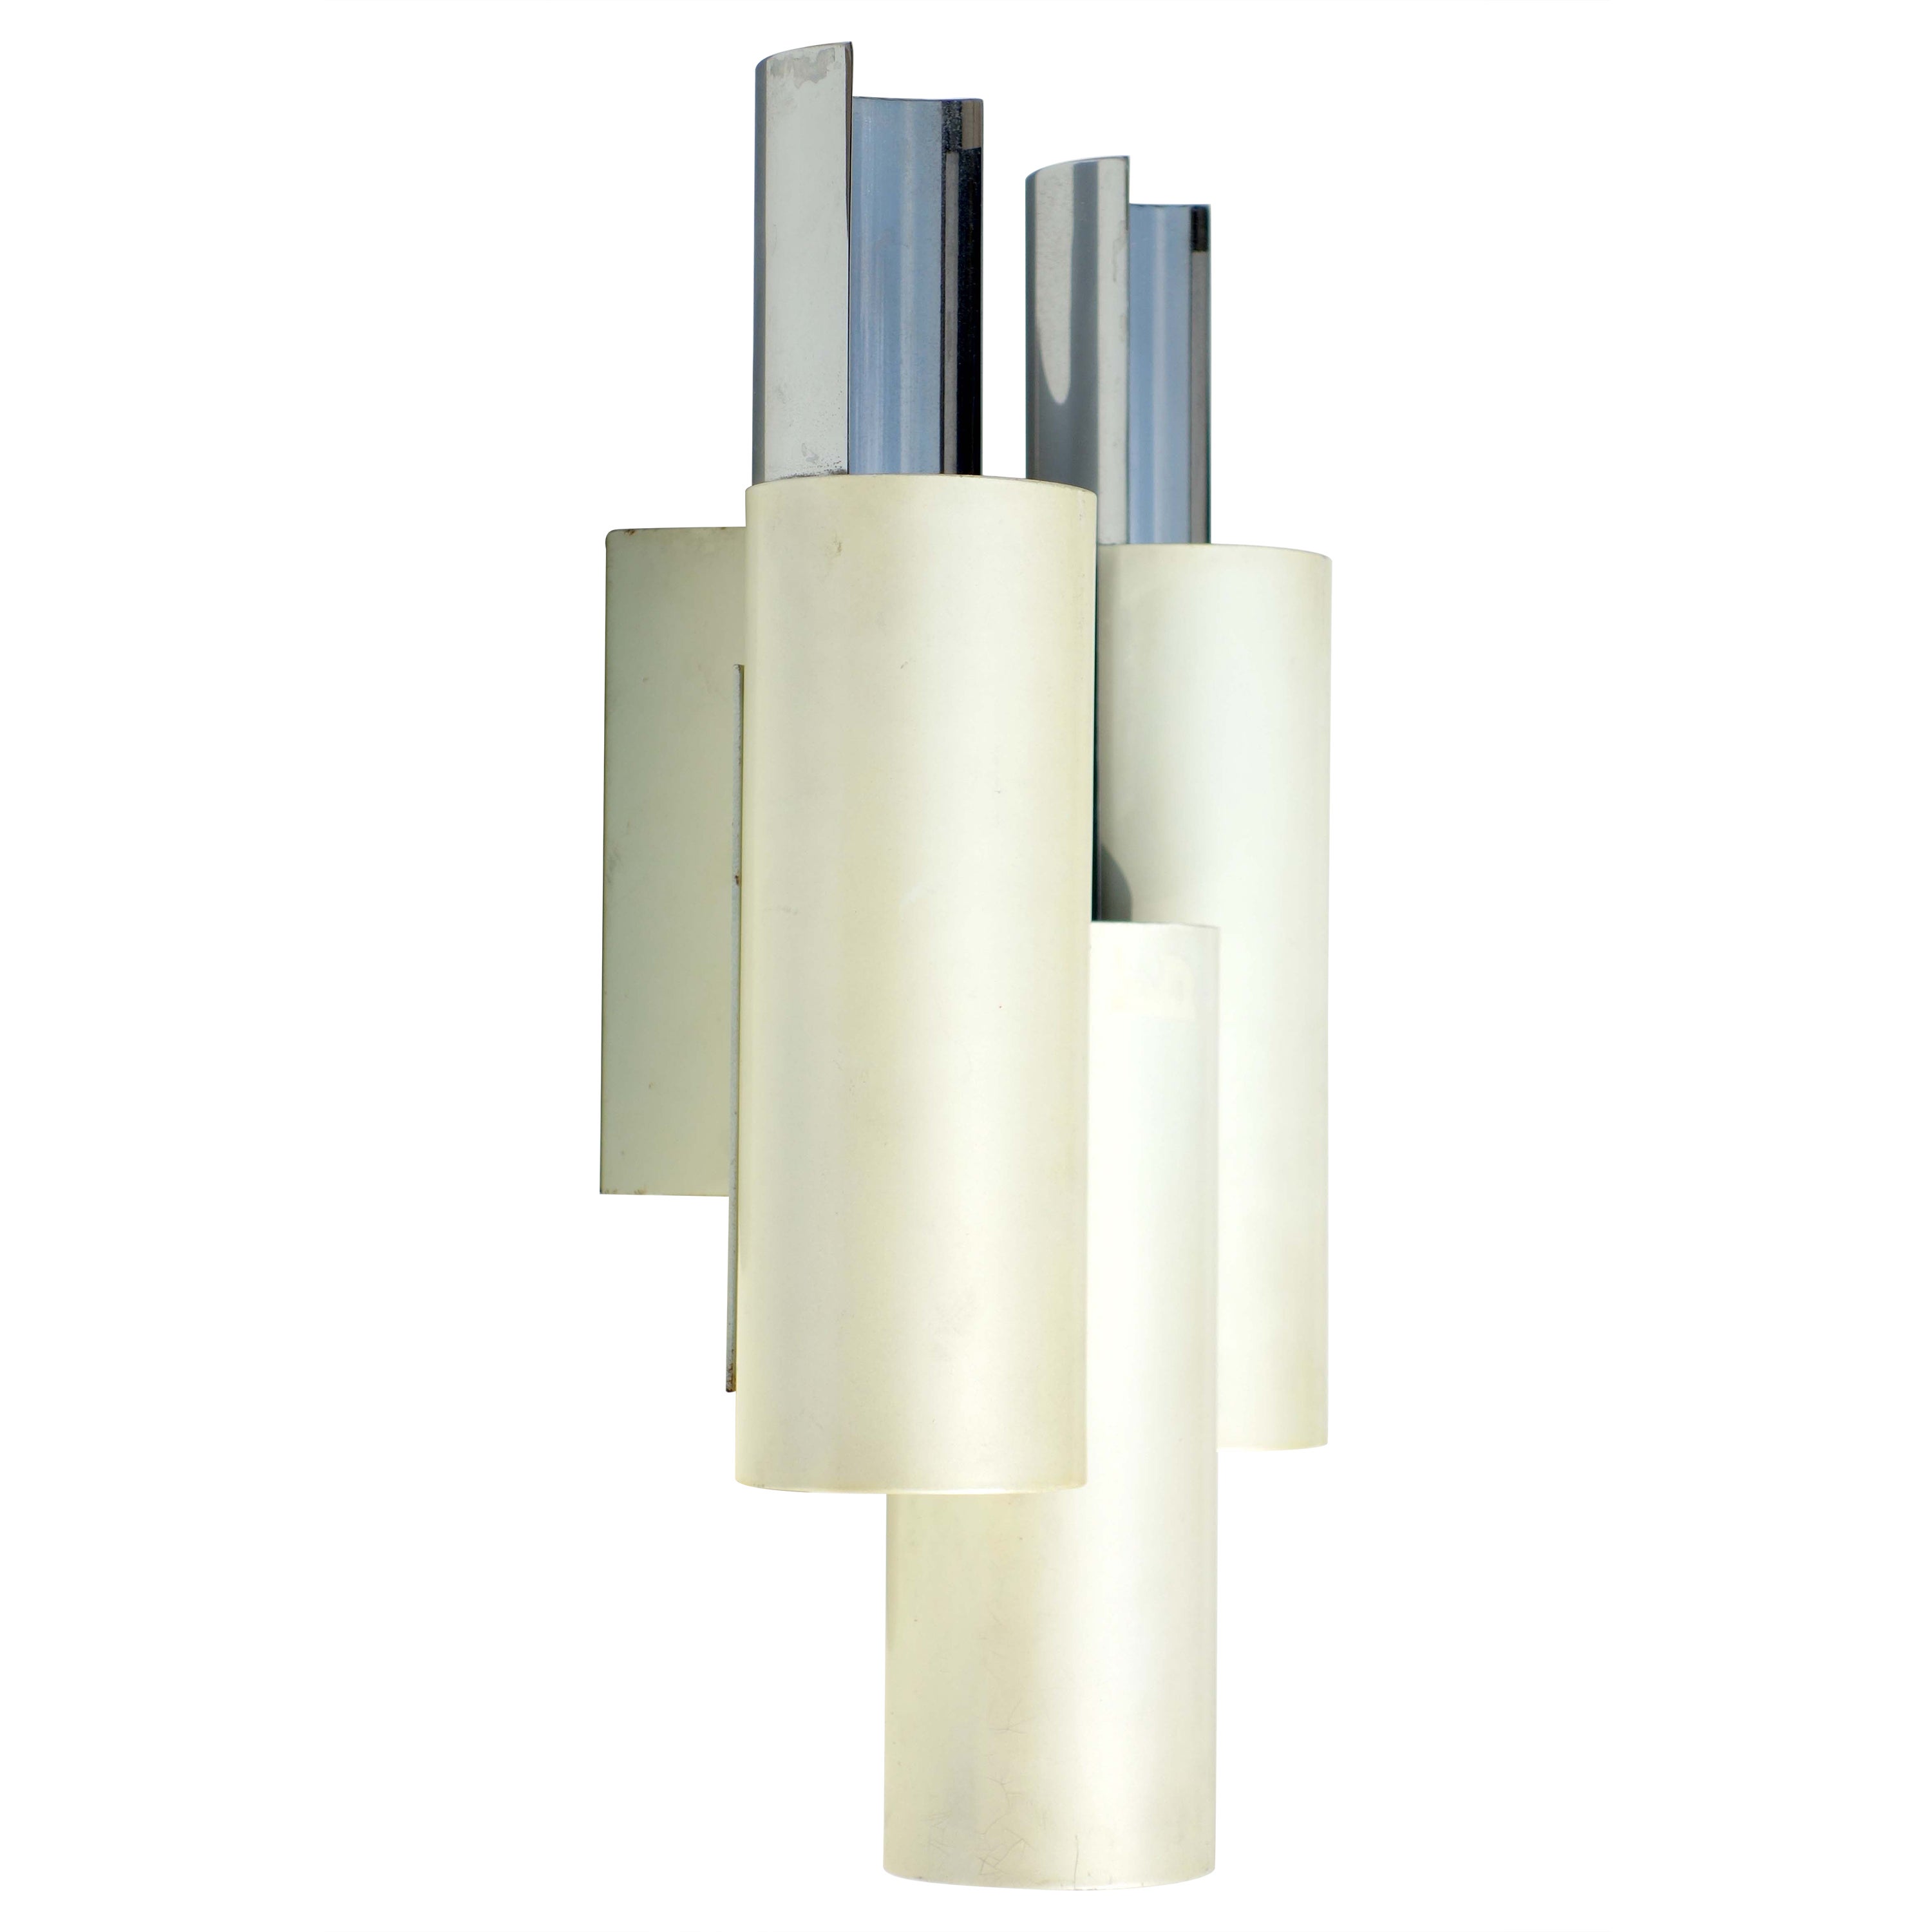 1960er Jahre Stilnovo Design Italienische Wandlampe Weiß Metall Applique